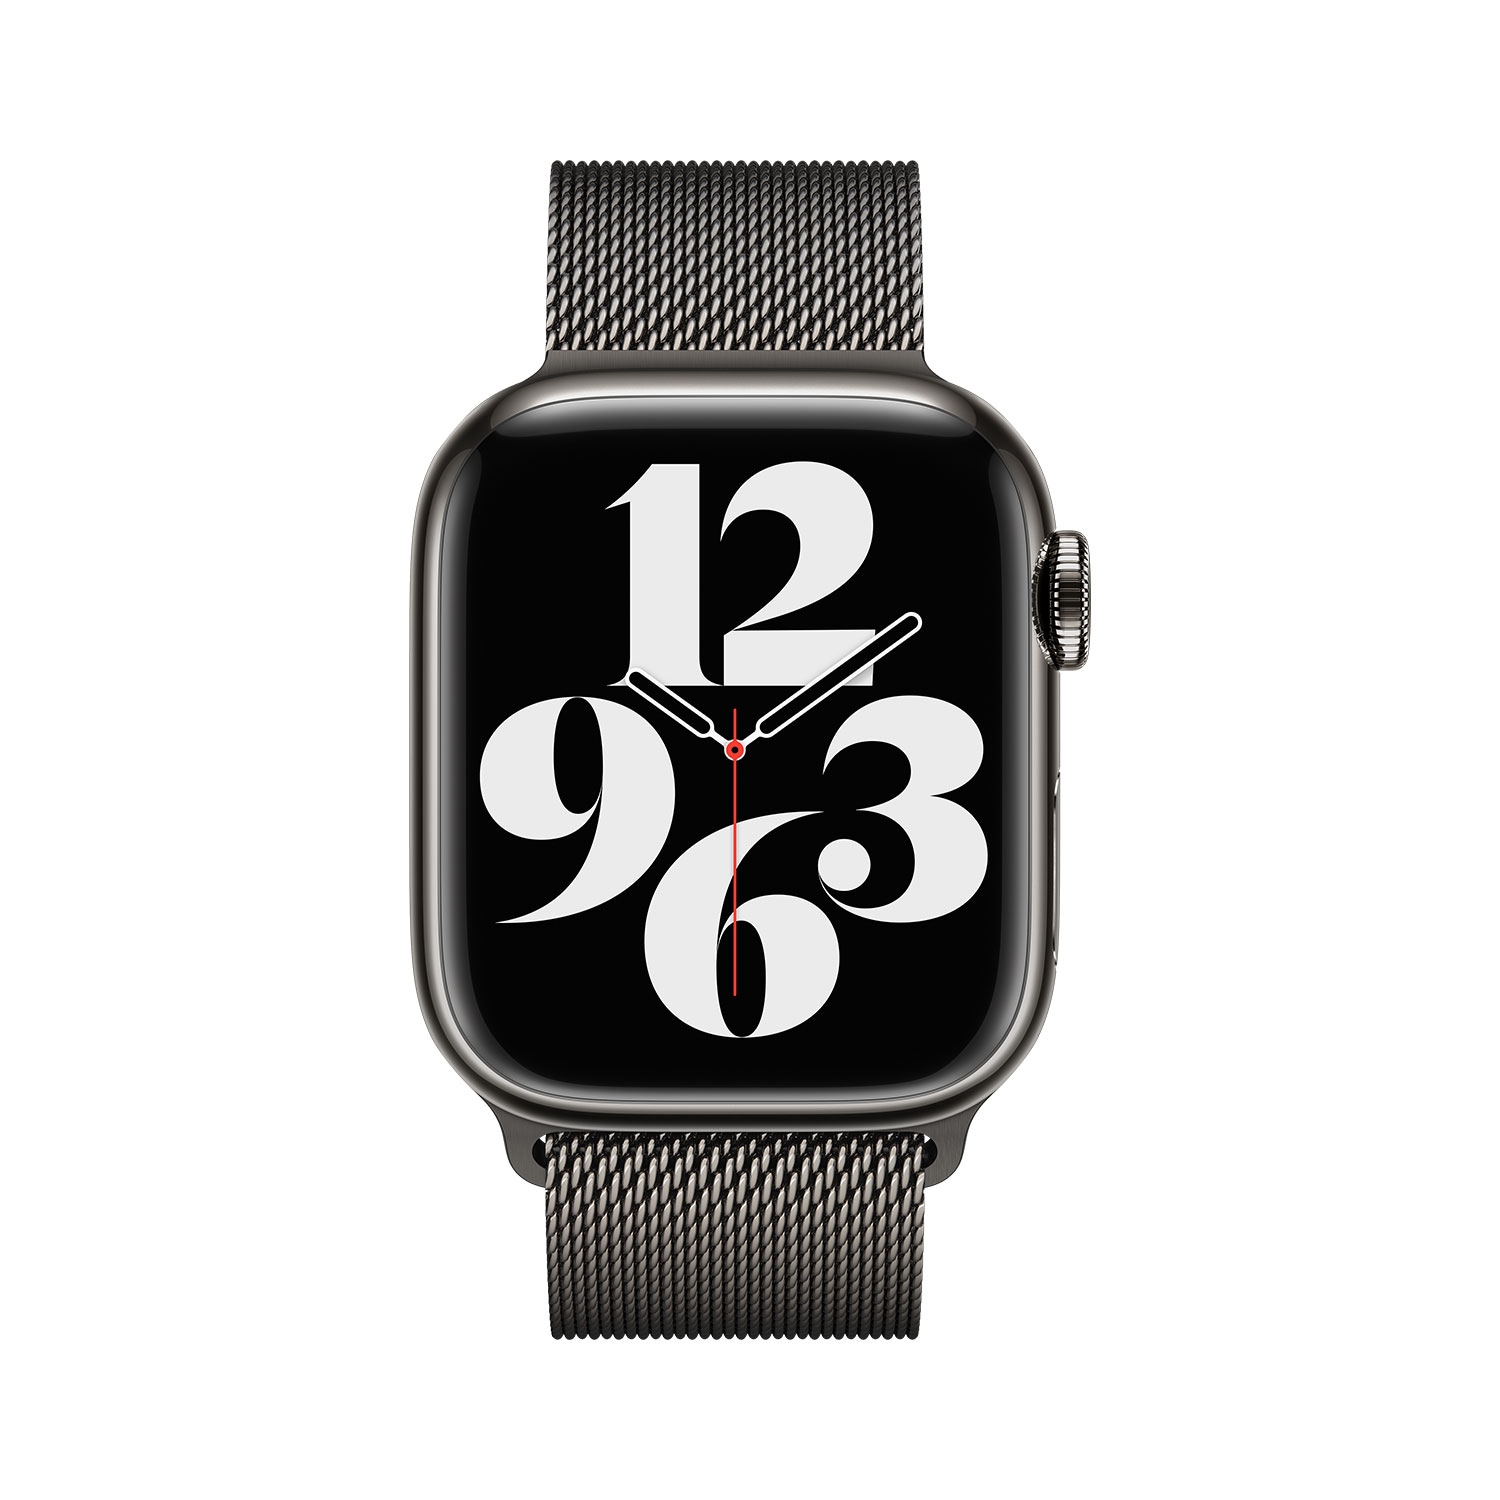 Apple jetzt Apple »41 online bei für Watch« mm, OTTO Milanaise Smartwatch-Armband